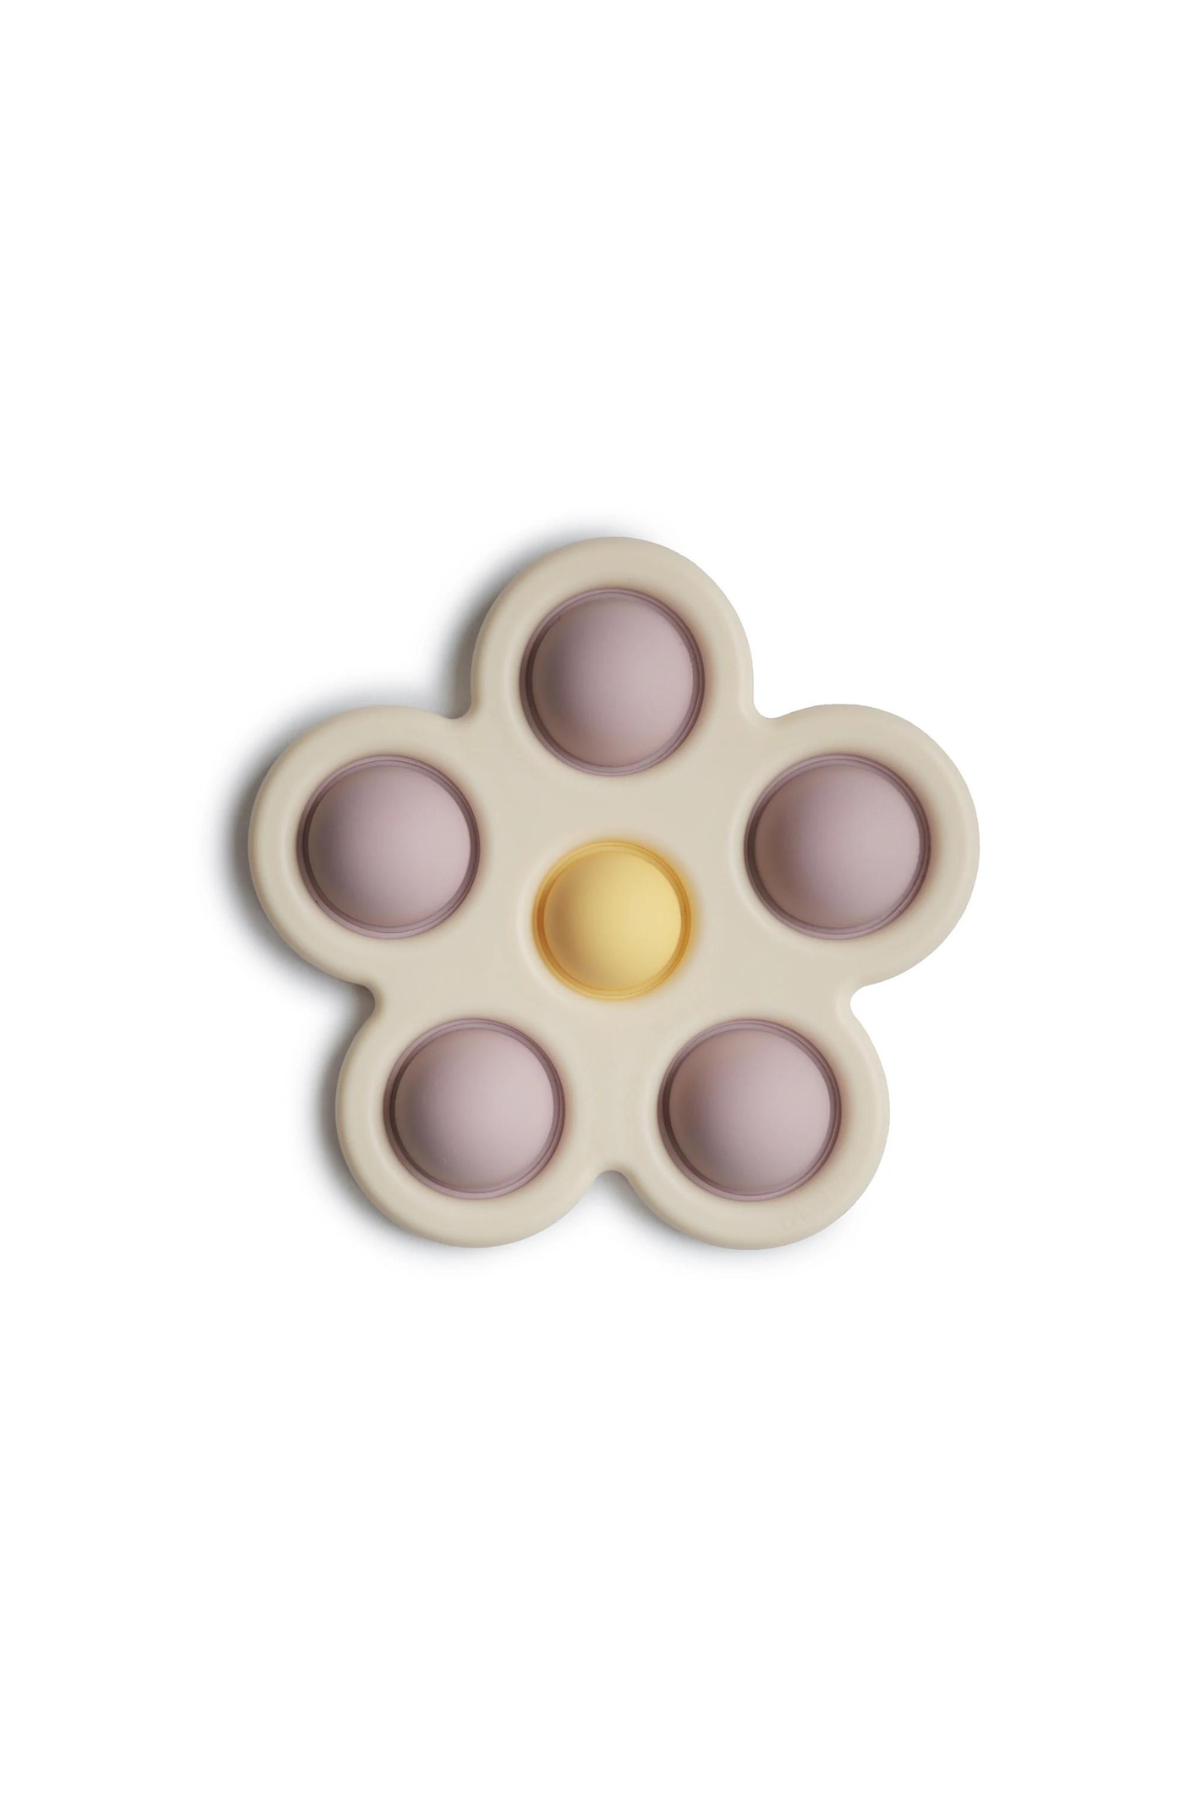 Sensorische Pop-it Blume von mushie | SYNCSON